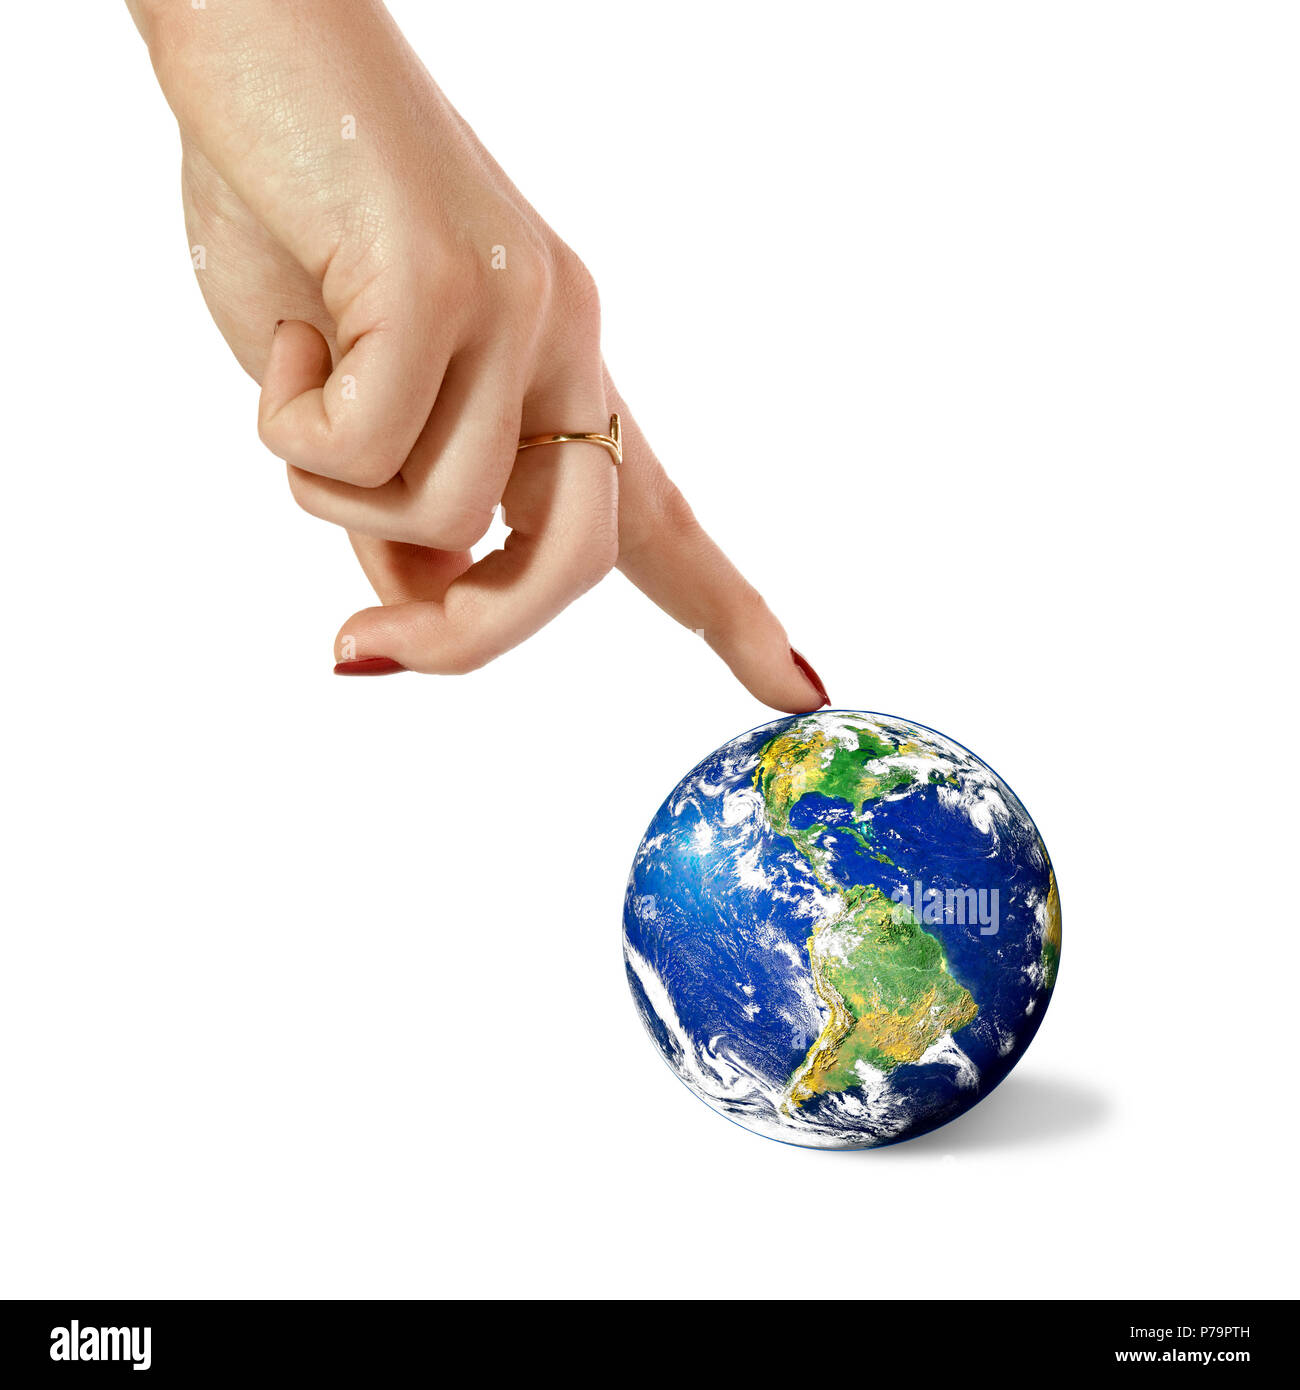 Donna mano dito indice in pianeta Terra, su uno sfondo bianco. Immagine dal satellite: Stokli, Nelson, Hasler Laboratorio per atmosfere Goddard Spa Foto Stock